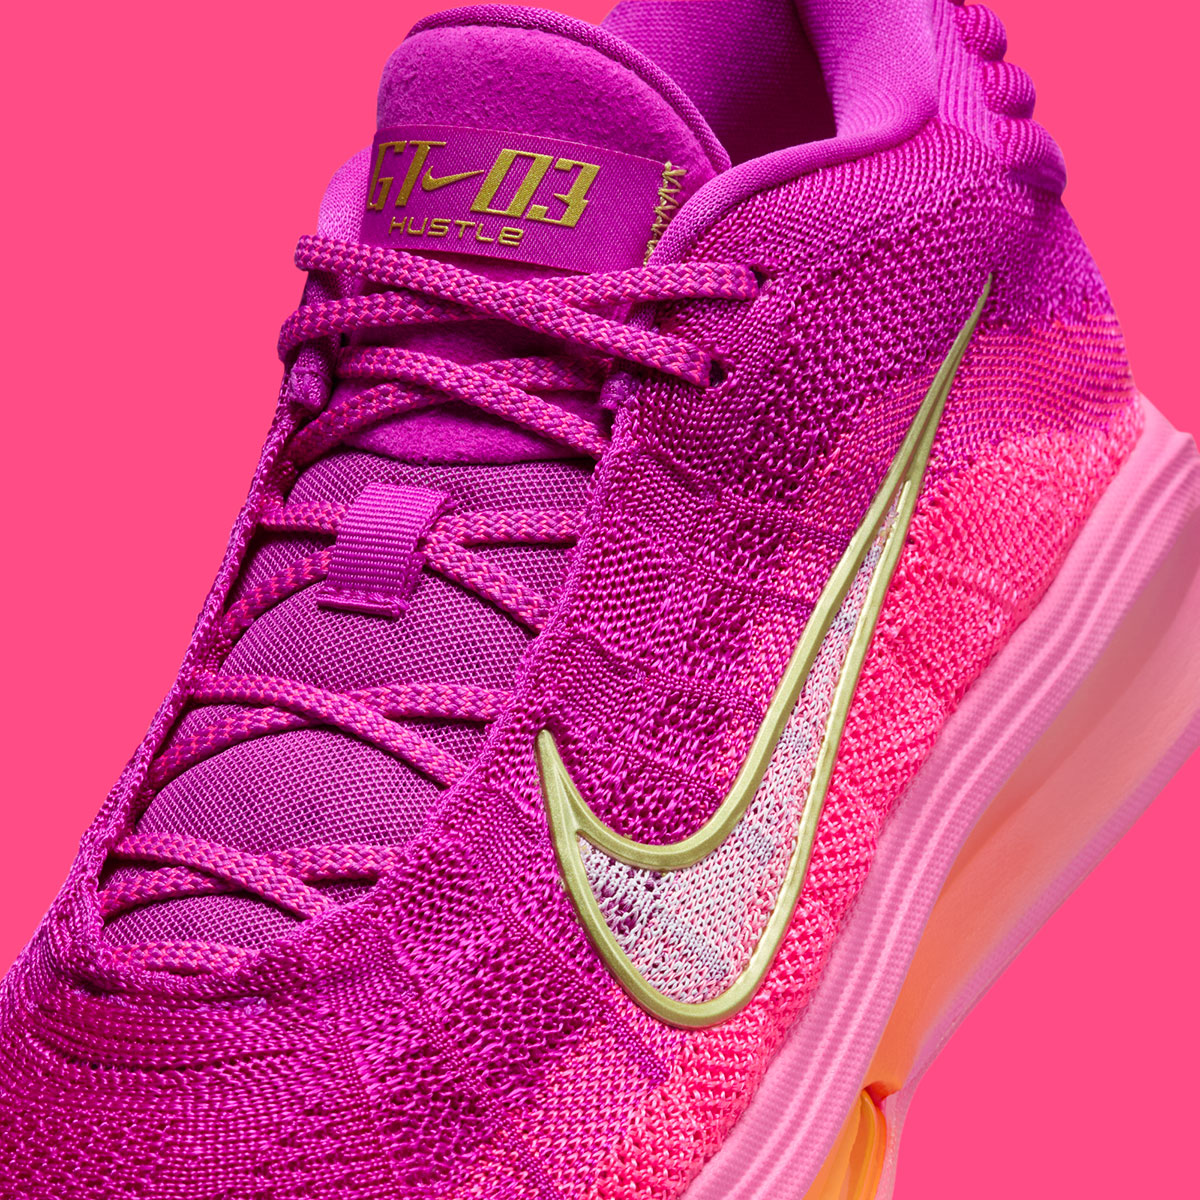 Nike Zoom Gt Hustle 3 Hyper Pink Vivid Grape Total Orange Fv5953 601 8